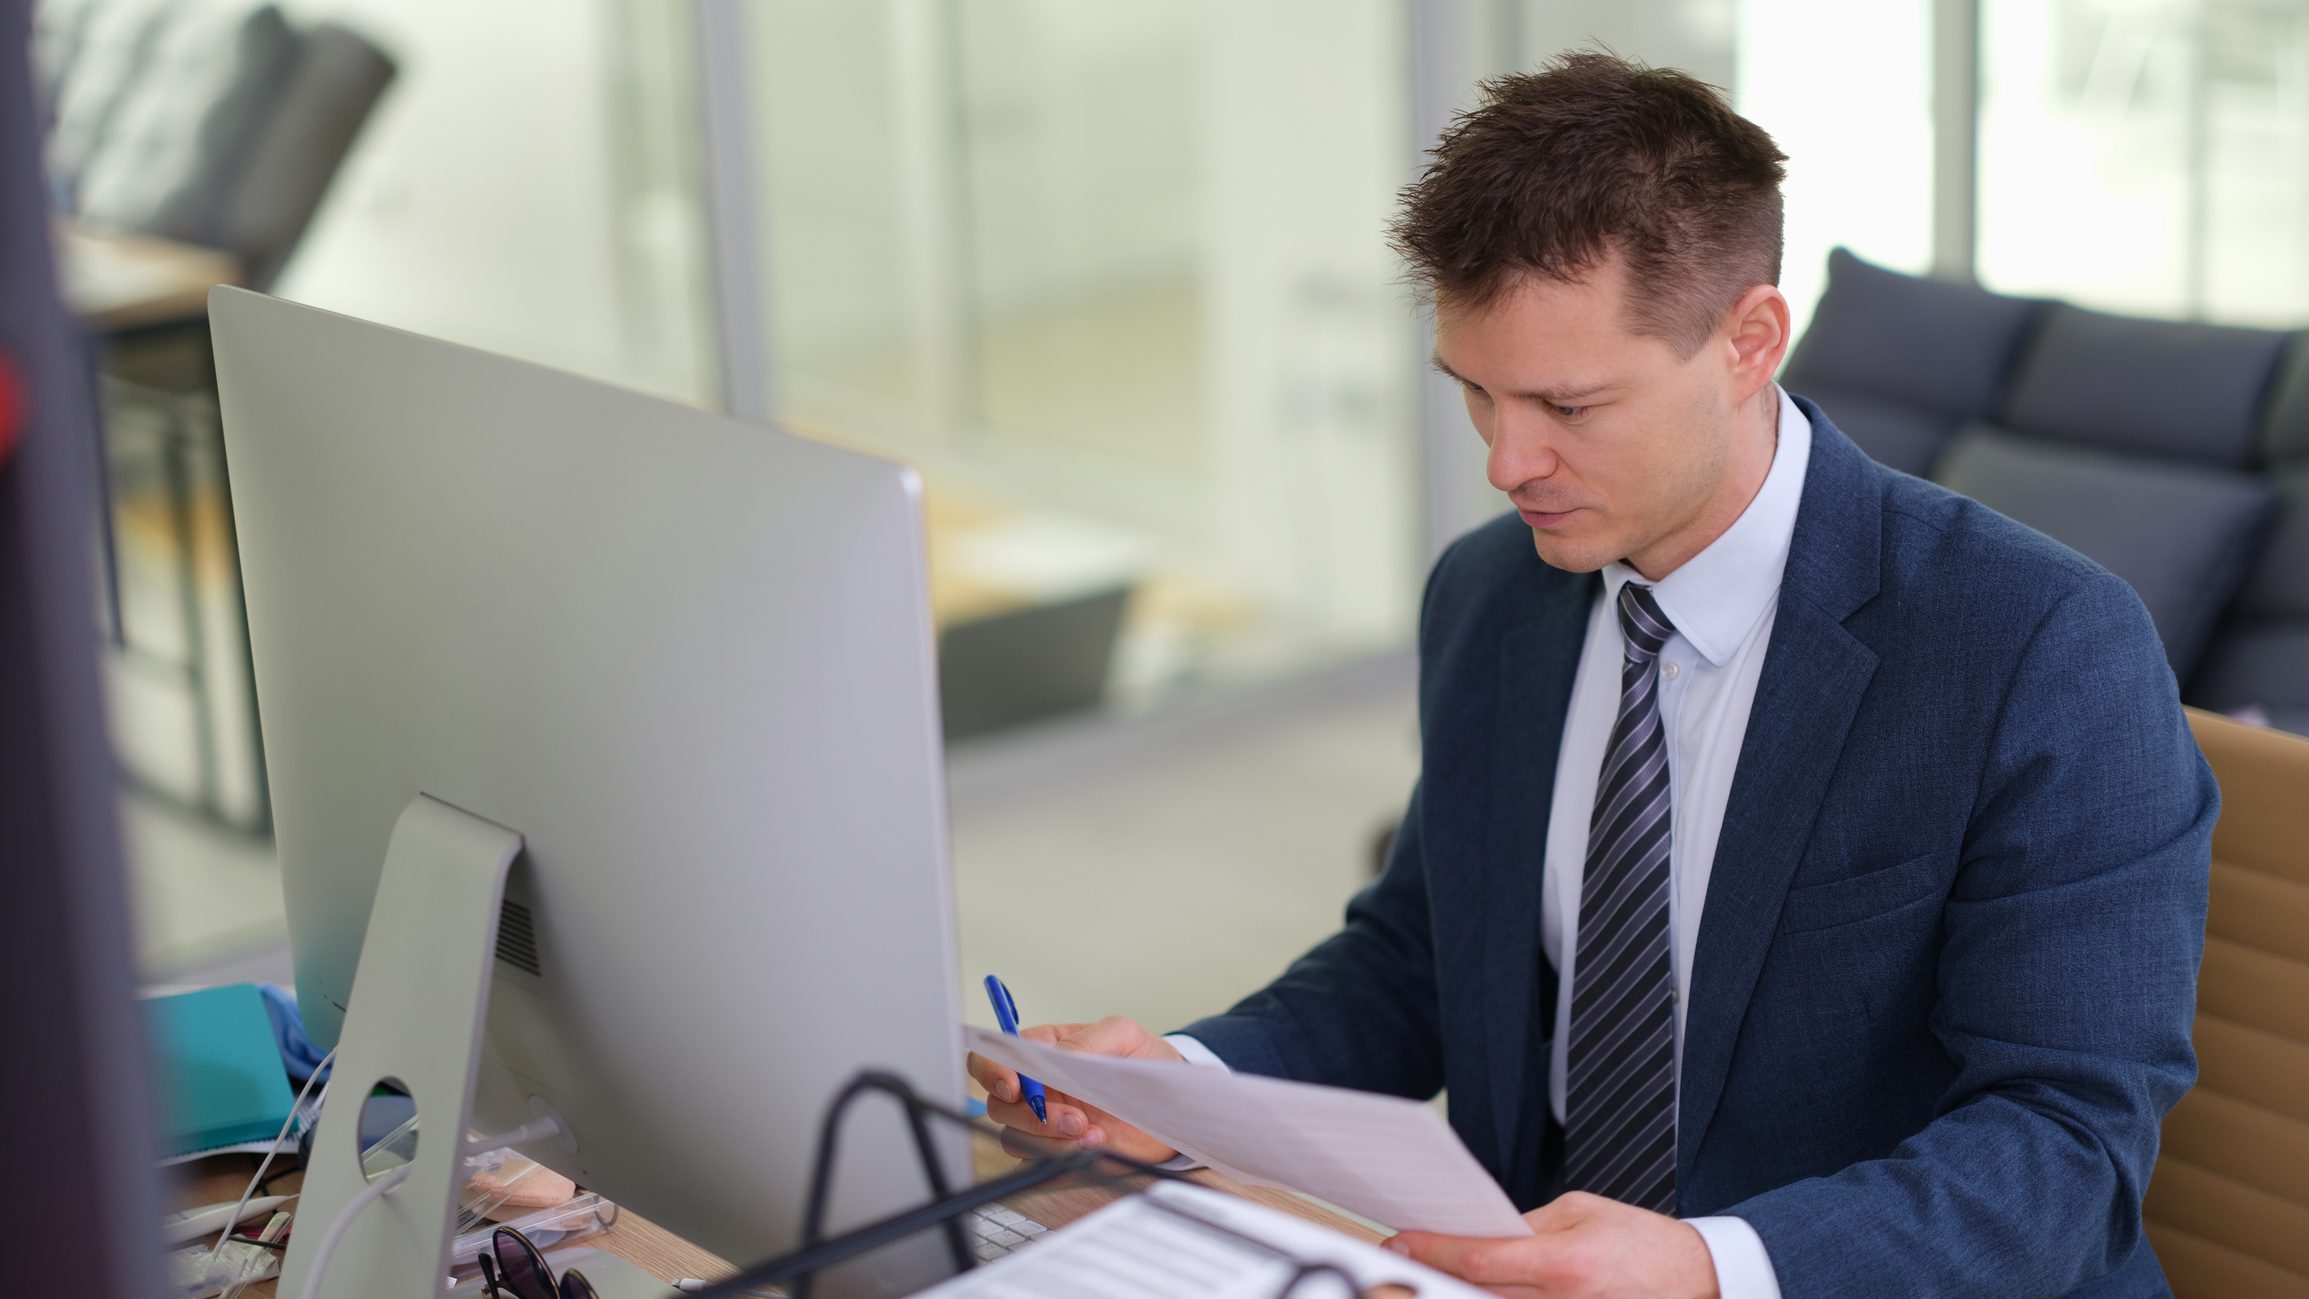 Egy öltönyös férfi egy irodában a számítógépnél ül a munkaasztalánál és egy papírlapot tanulmányoz.